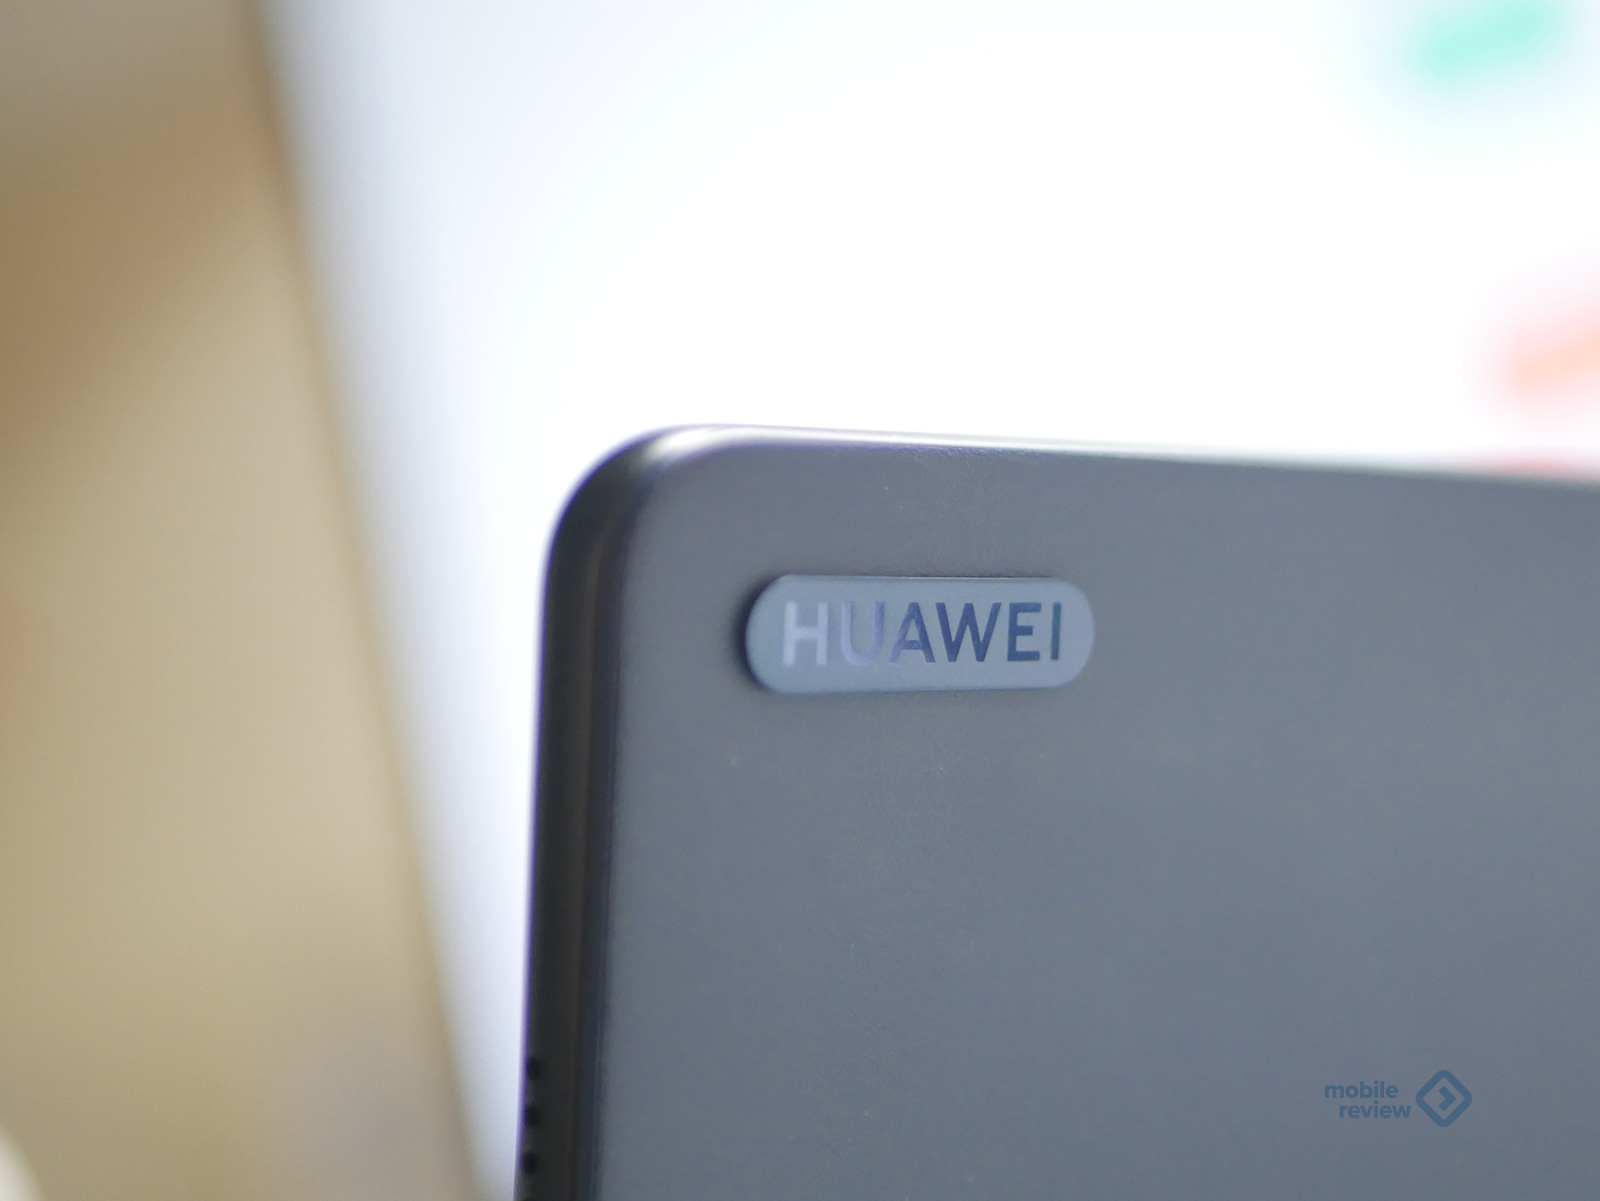 Как подключить смарт-клавиатуру к беспроводной клавиатуре huawei и Aliexpress kemile bluetooth Беспроводная клавиатура bluetooth с русским языком 3.0 для планшета Samsung и смартфона Lenove и Huawei Система Android Windows